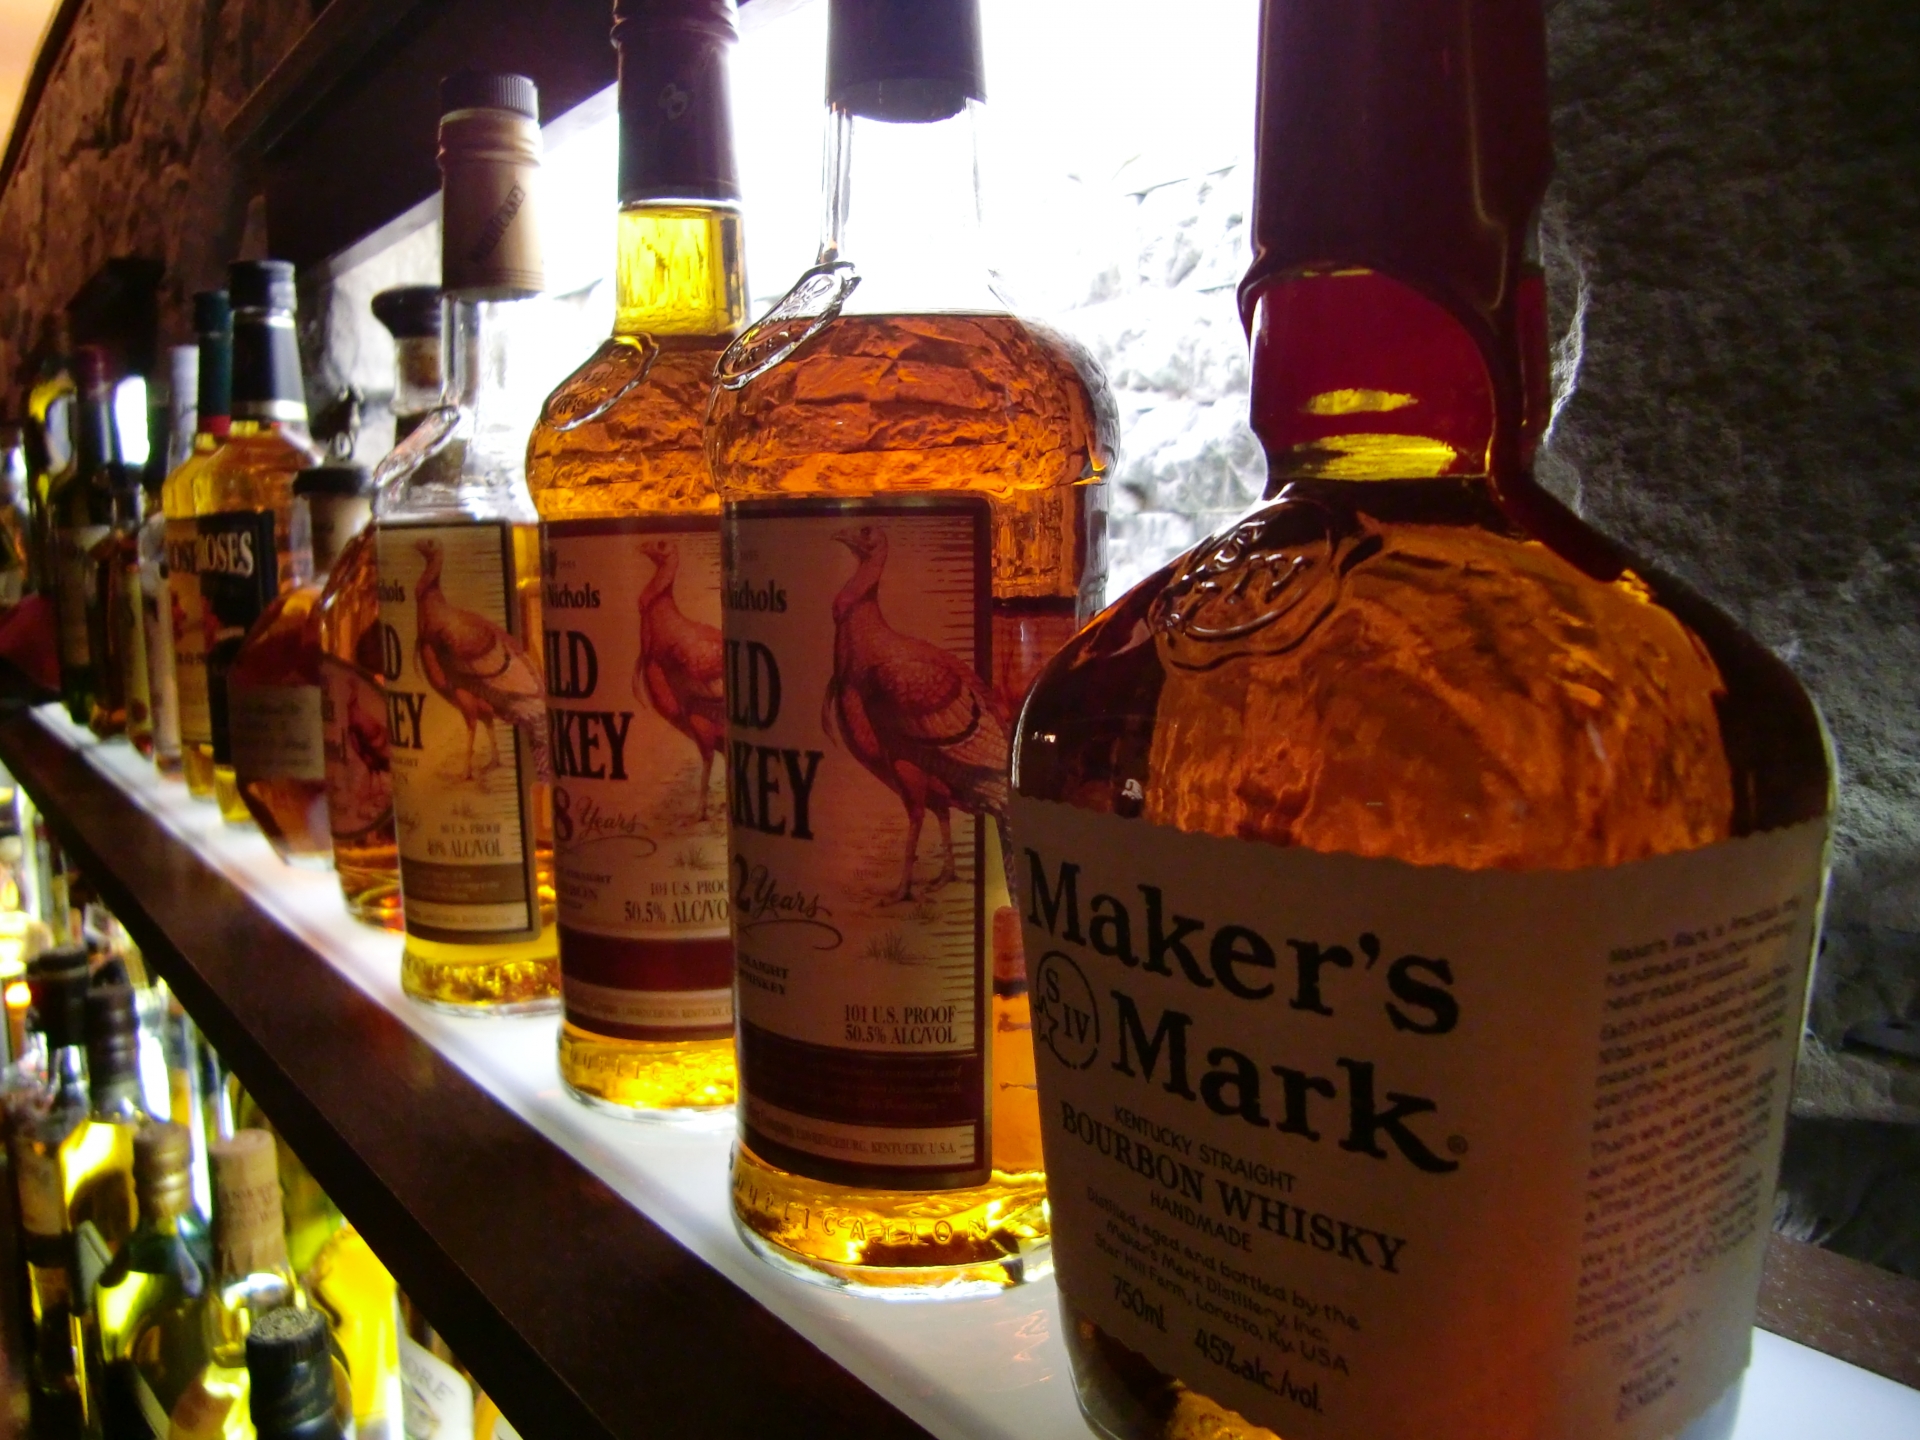 世界的なウイスキー『山崎』シリーズの全24種類を徹底網羅 